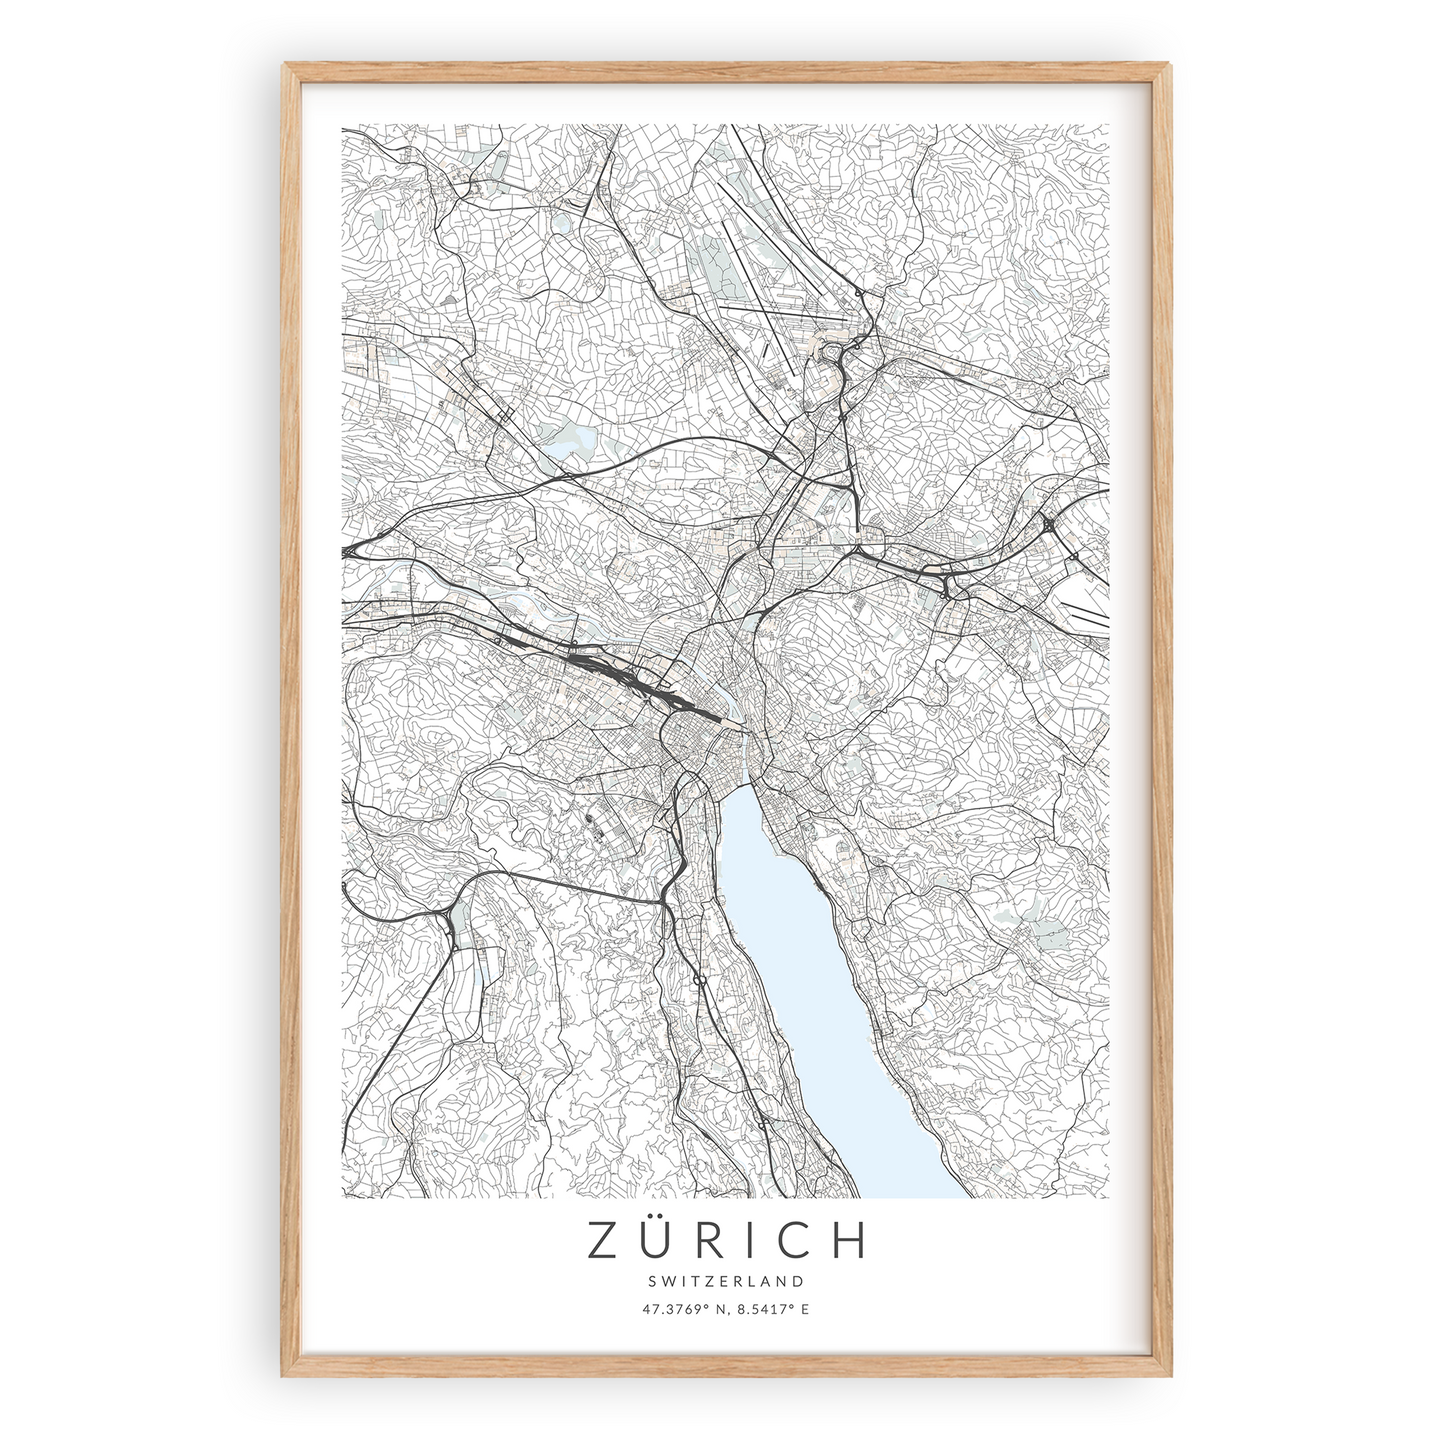 zürich switzerland map print in wood frame